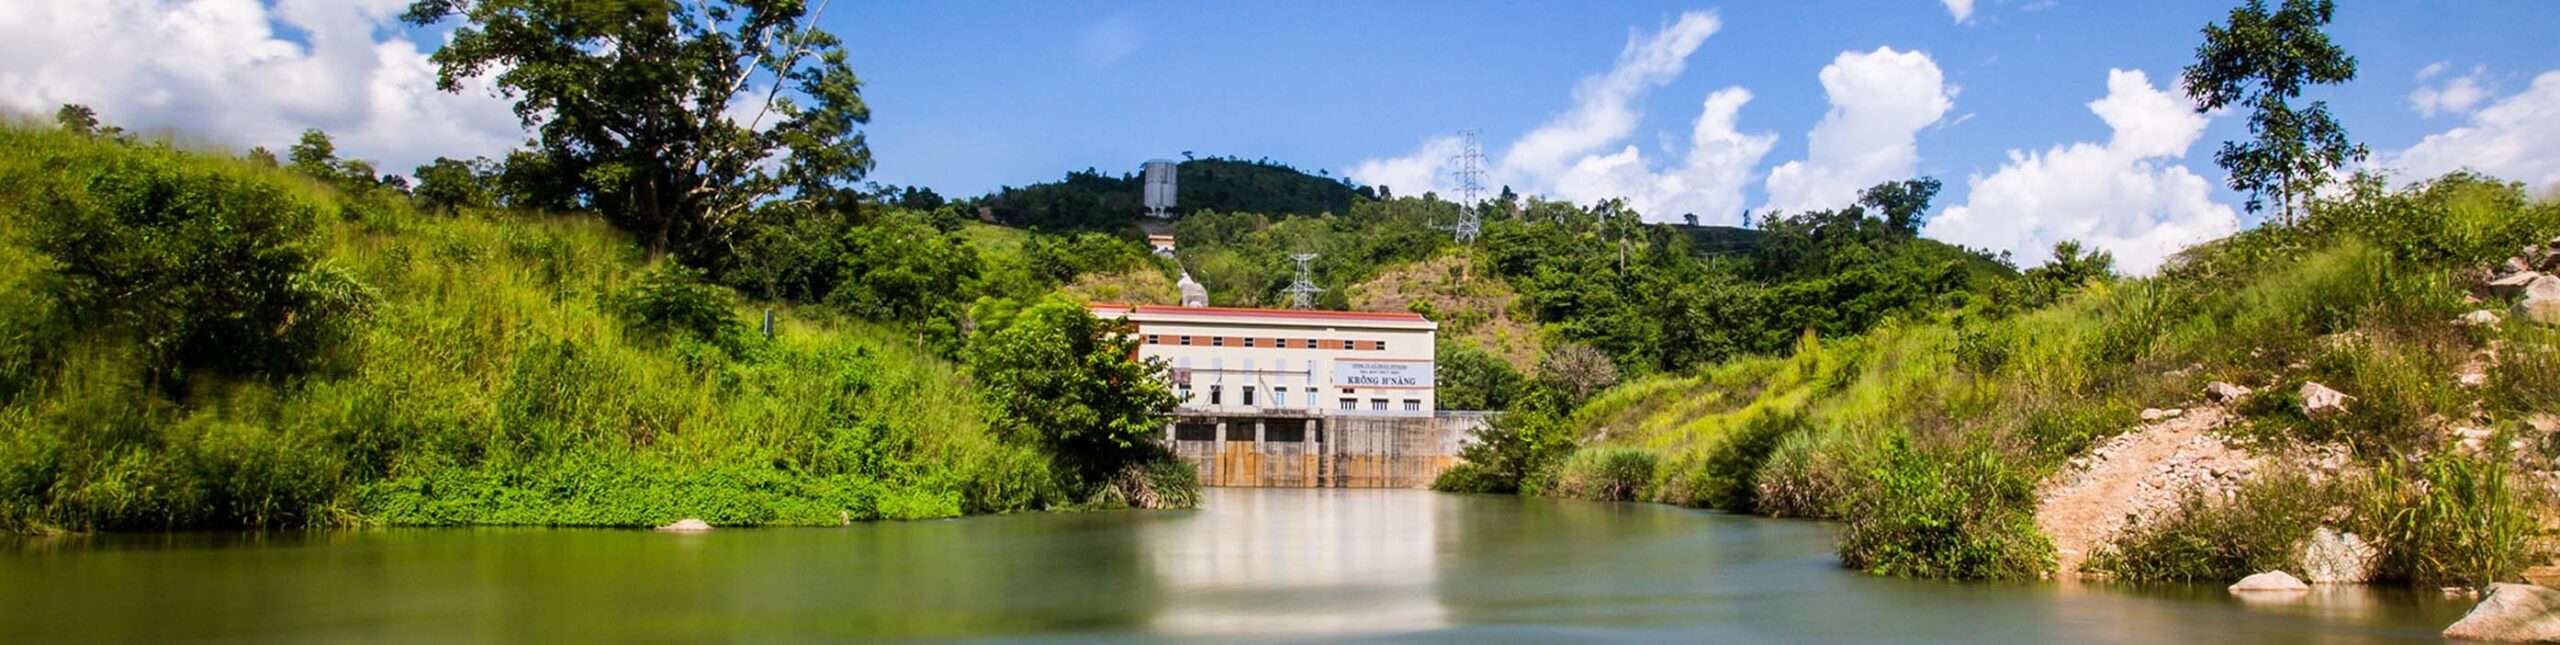 Nhà máy thủy điện Sông Ba (Công ty Cổ phần Sông Ba) 